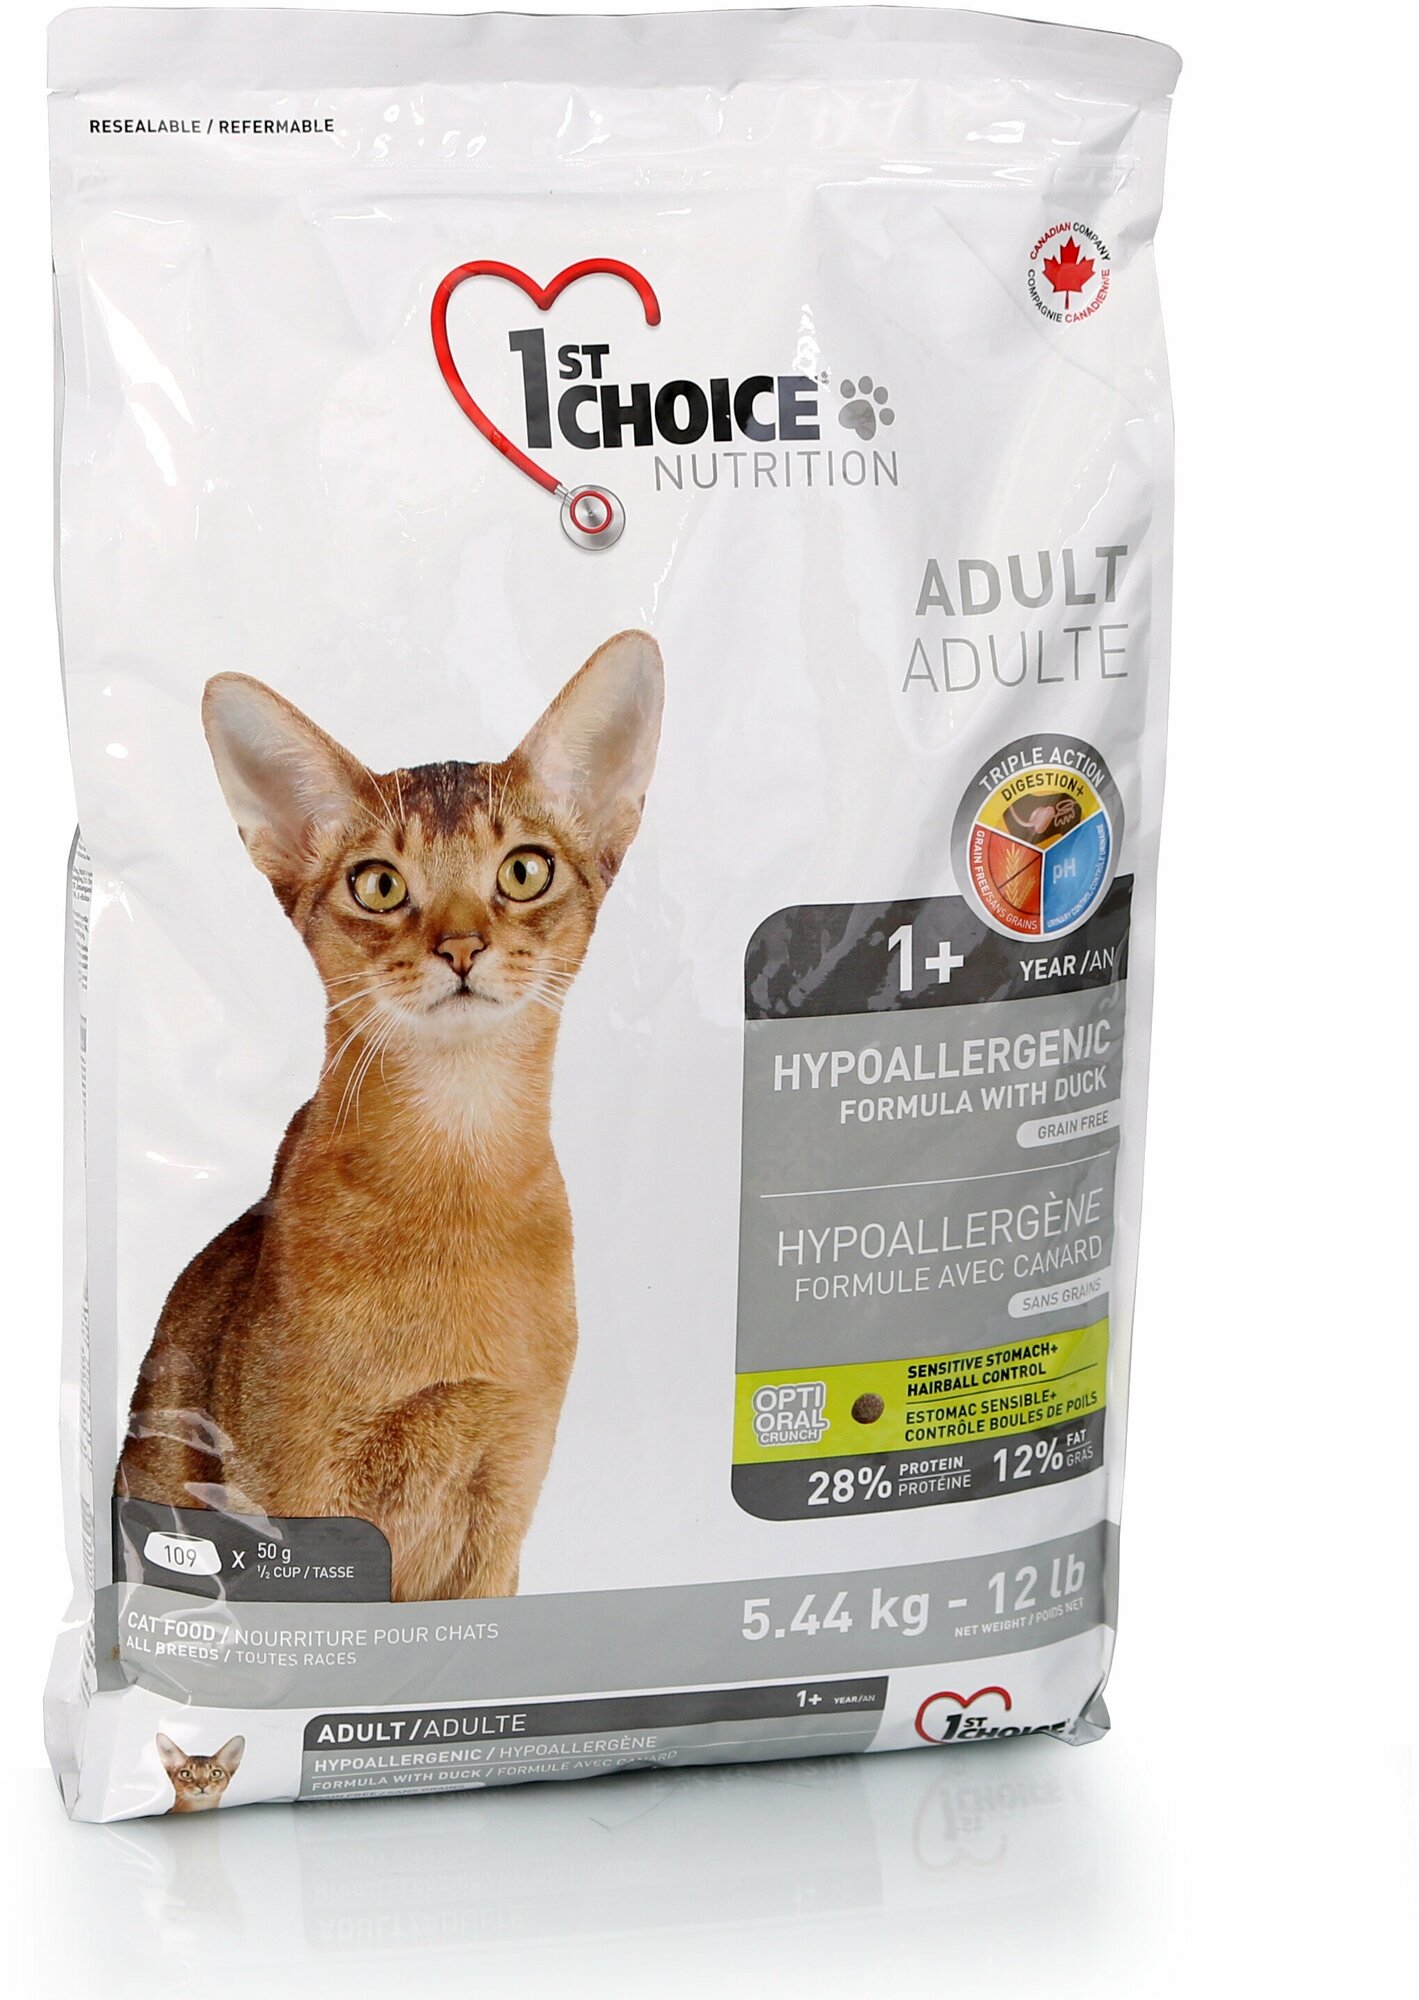 Сухой корм для кошек 1st Choice Adult, гипоаллергенный, с уткой 5.44 кг